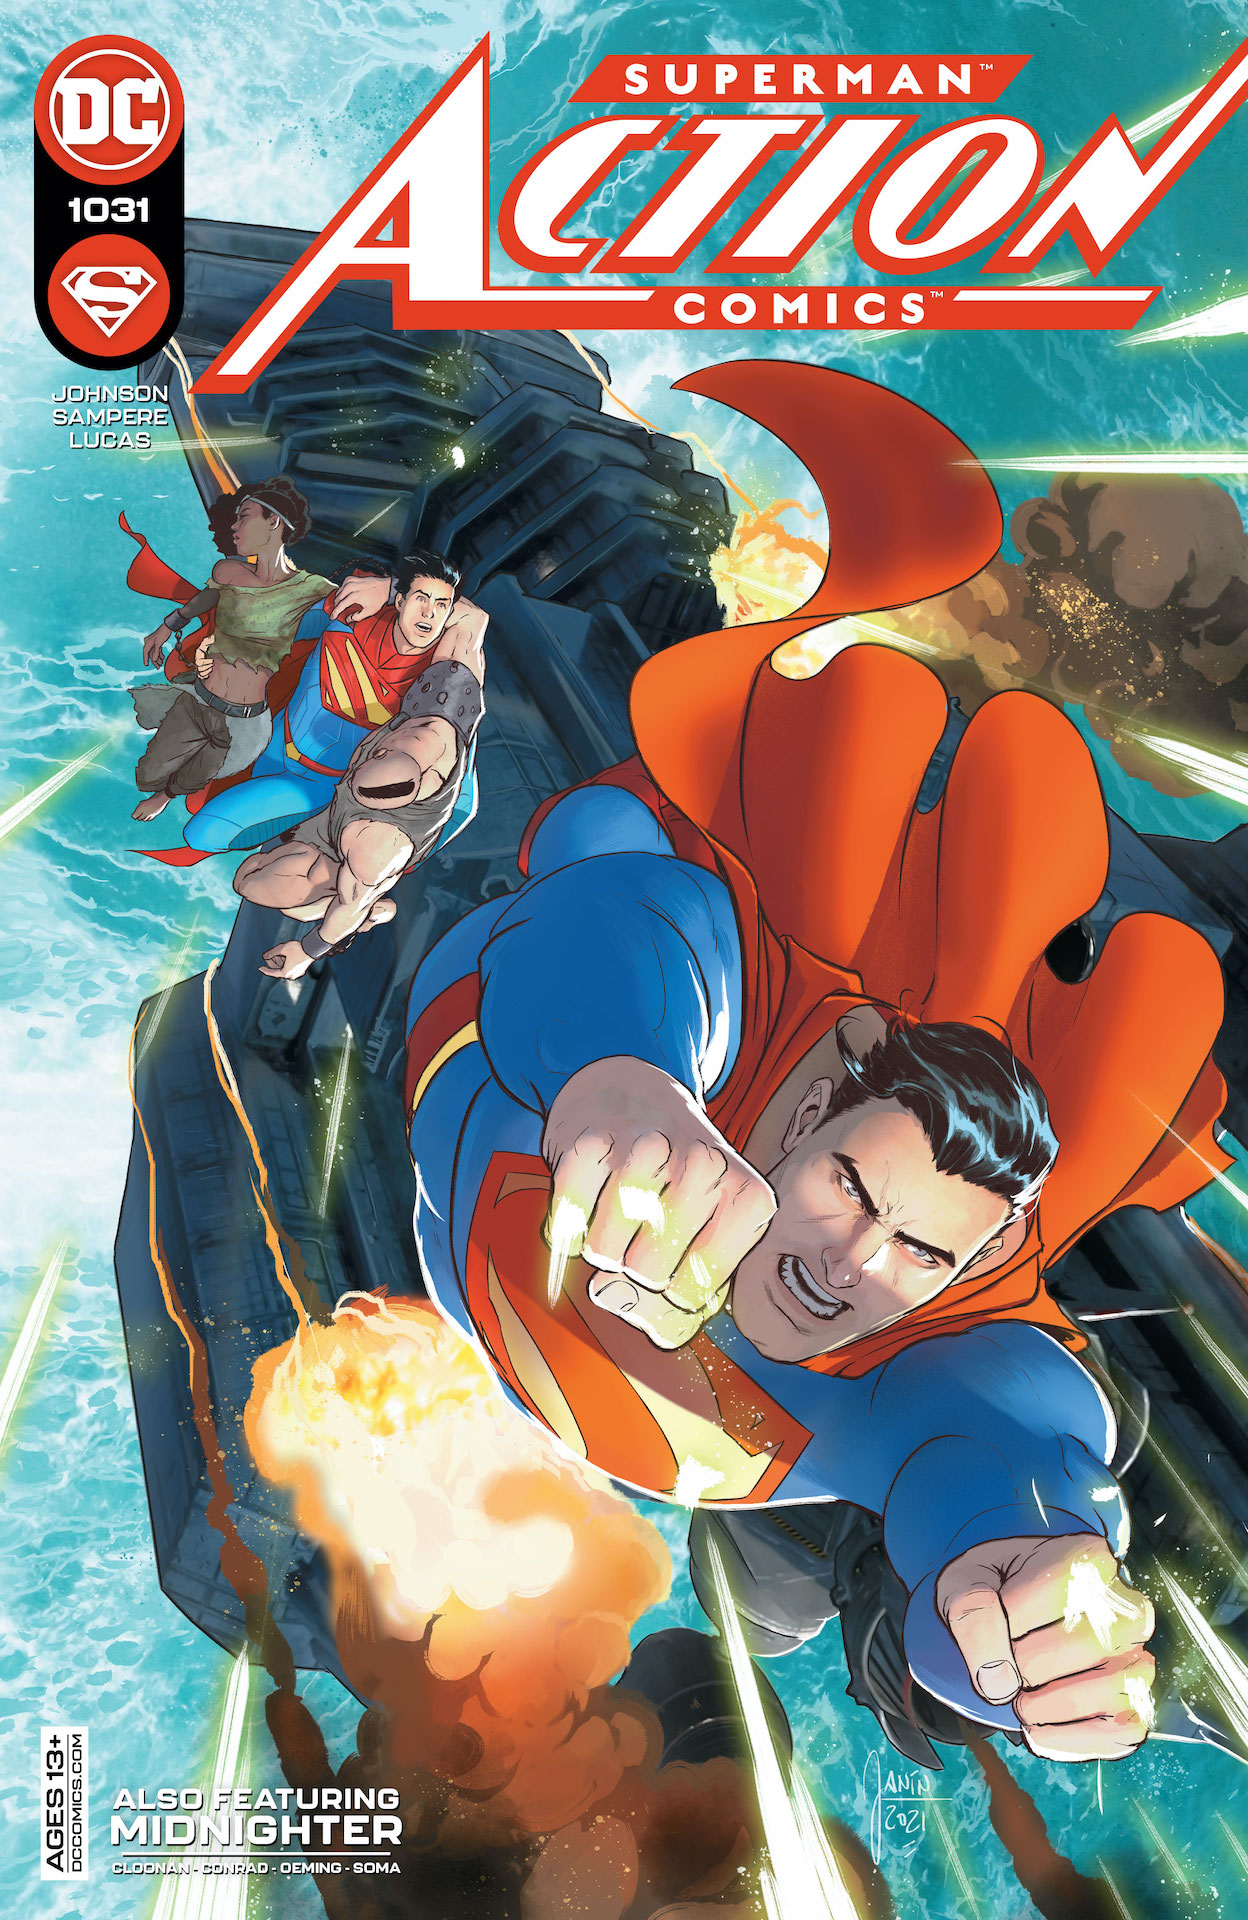 DC Preview: Action Comics #1031